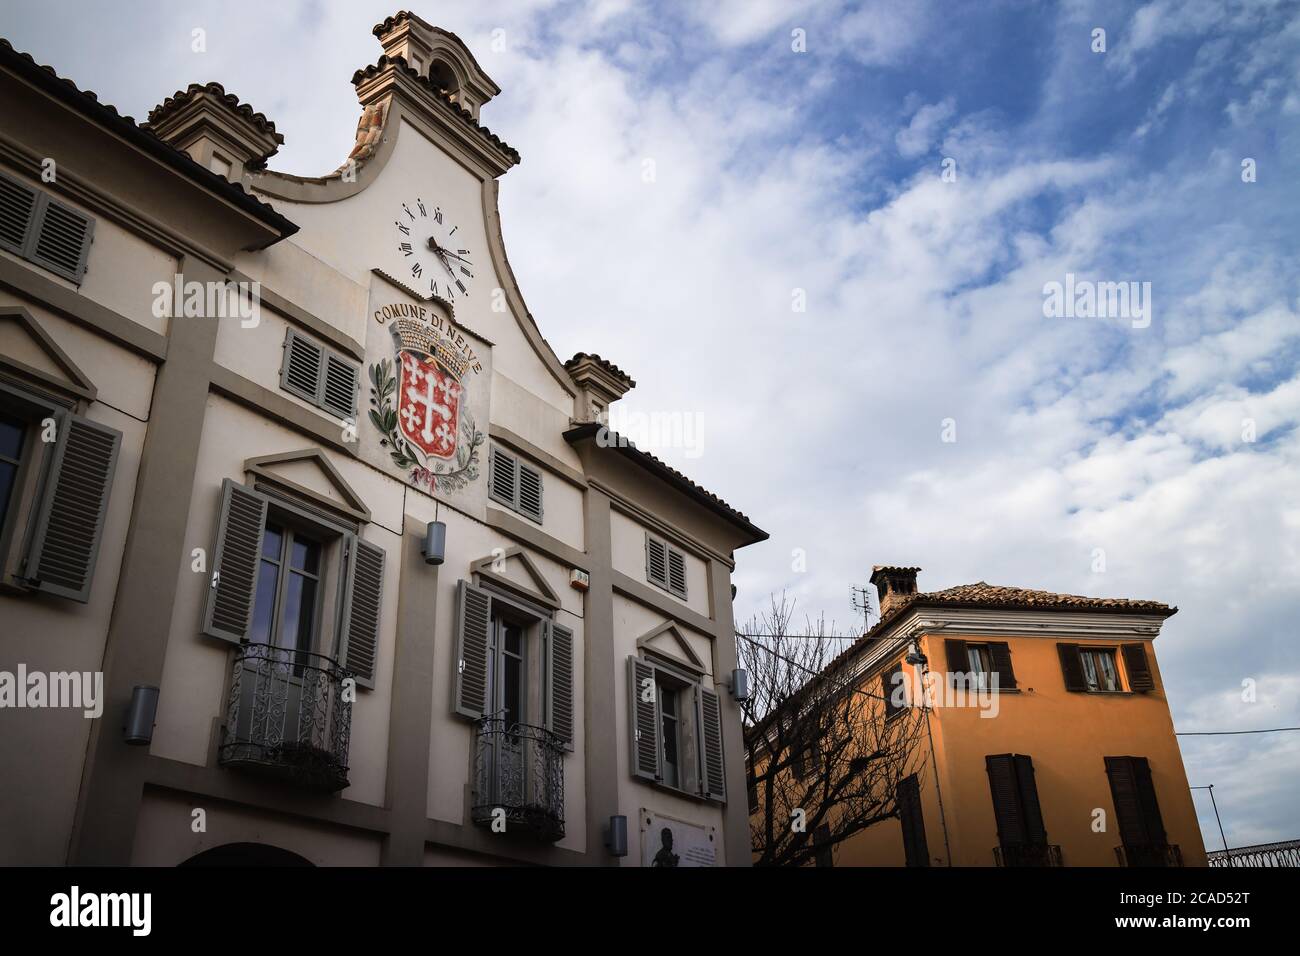 NEIVE, ITALIEN - 3. MÄRZ 2019: Das Rathaus (Gemeinde in italienischer Sprache) von Neive, Italien, eines der wichtigsten Dörfer der Langhe Hügel, berühmt distric Stockfoto